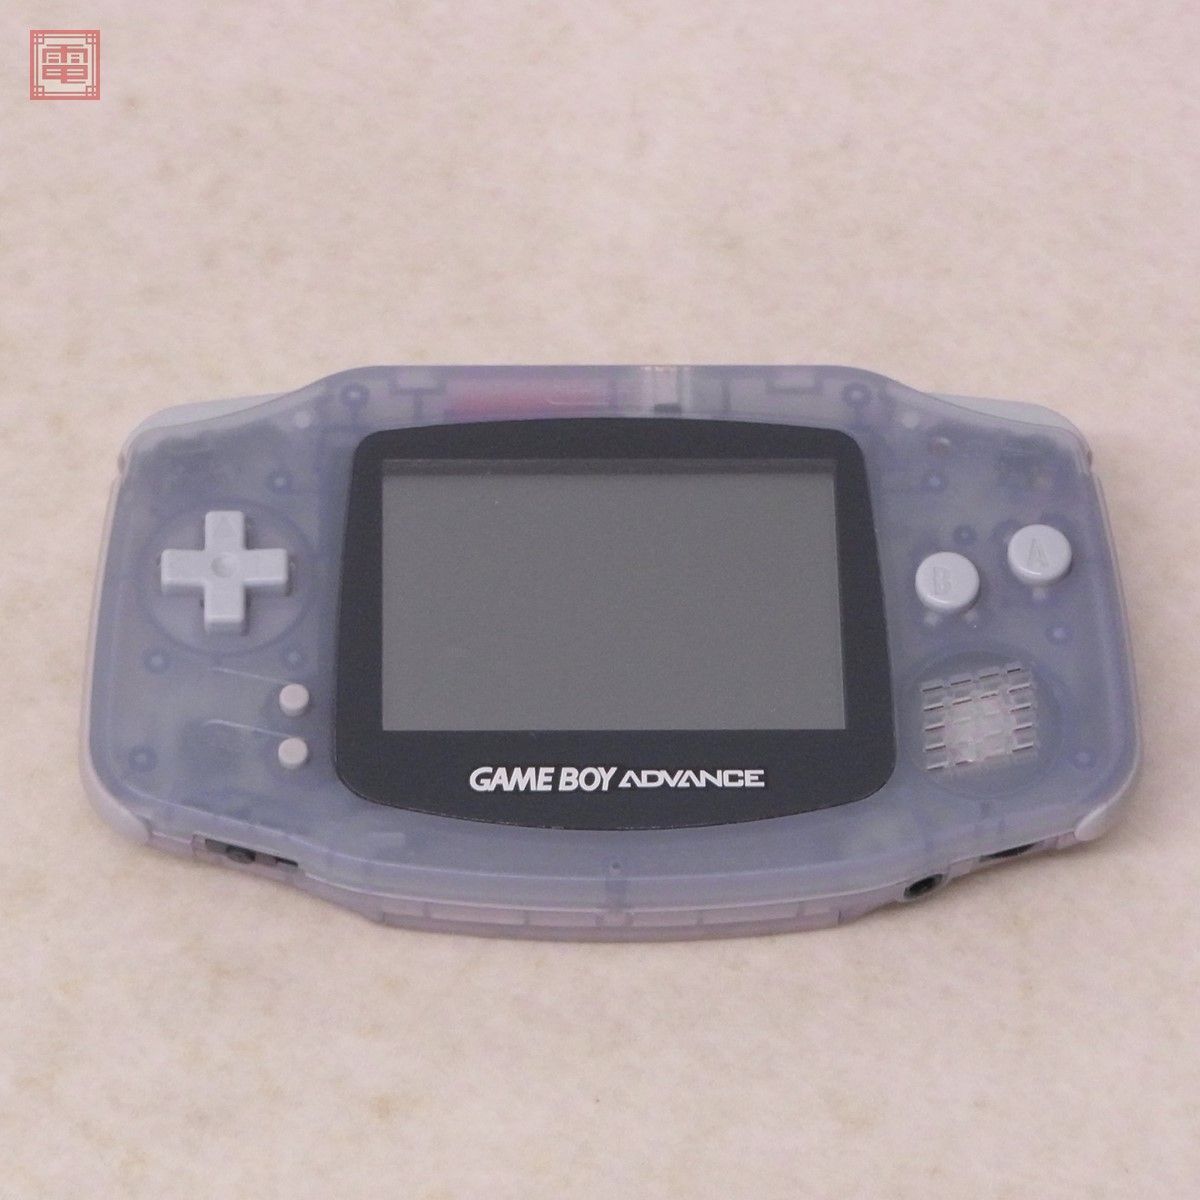  рабочий товар серийный совпадение GBA Game Boy Advance корпус AGB-001 Mill ключ голубой Nintendo nintendo Nintendo коробка мнение есть [10